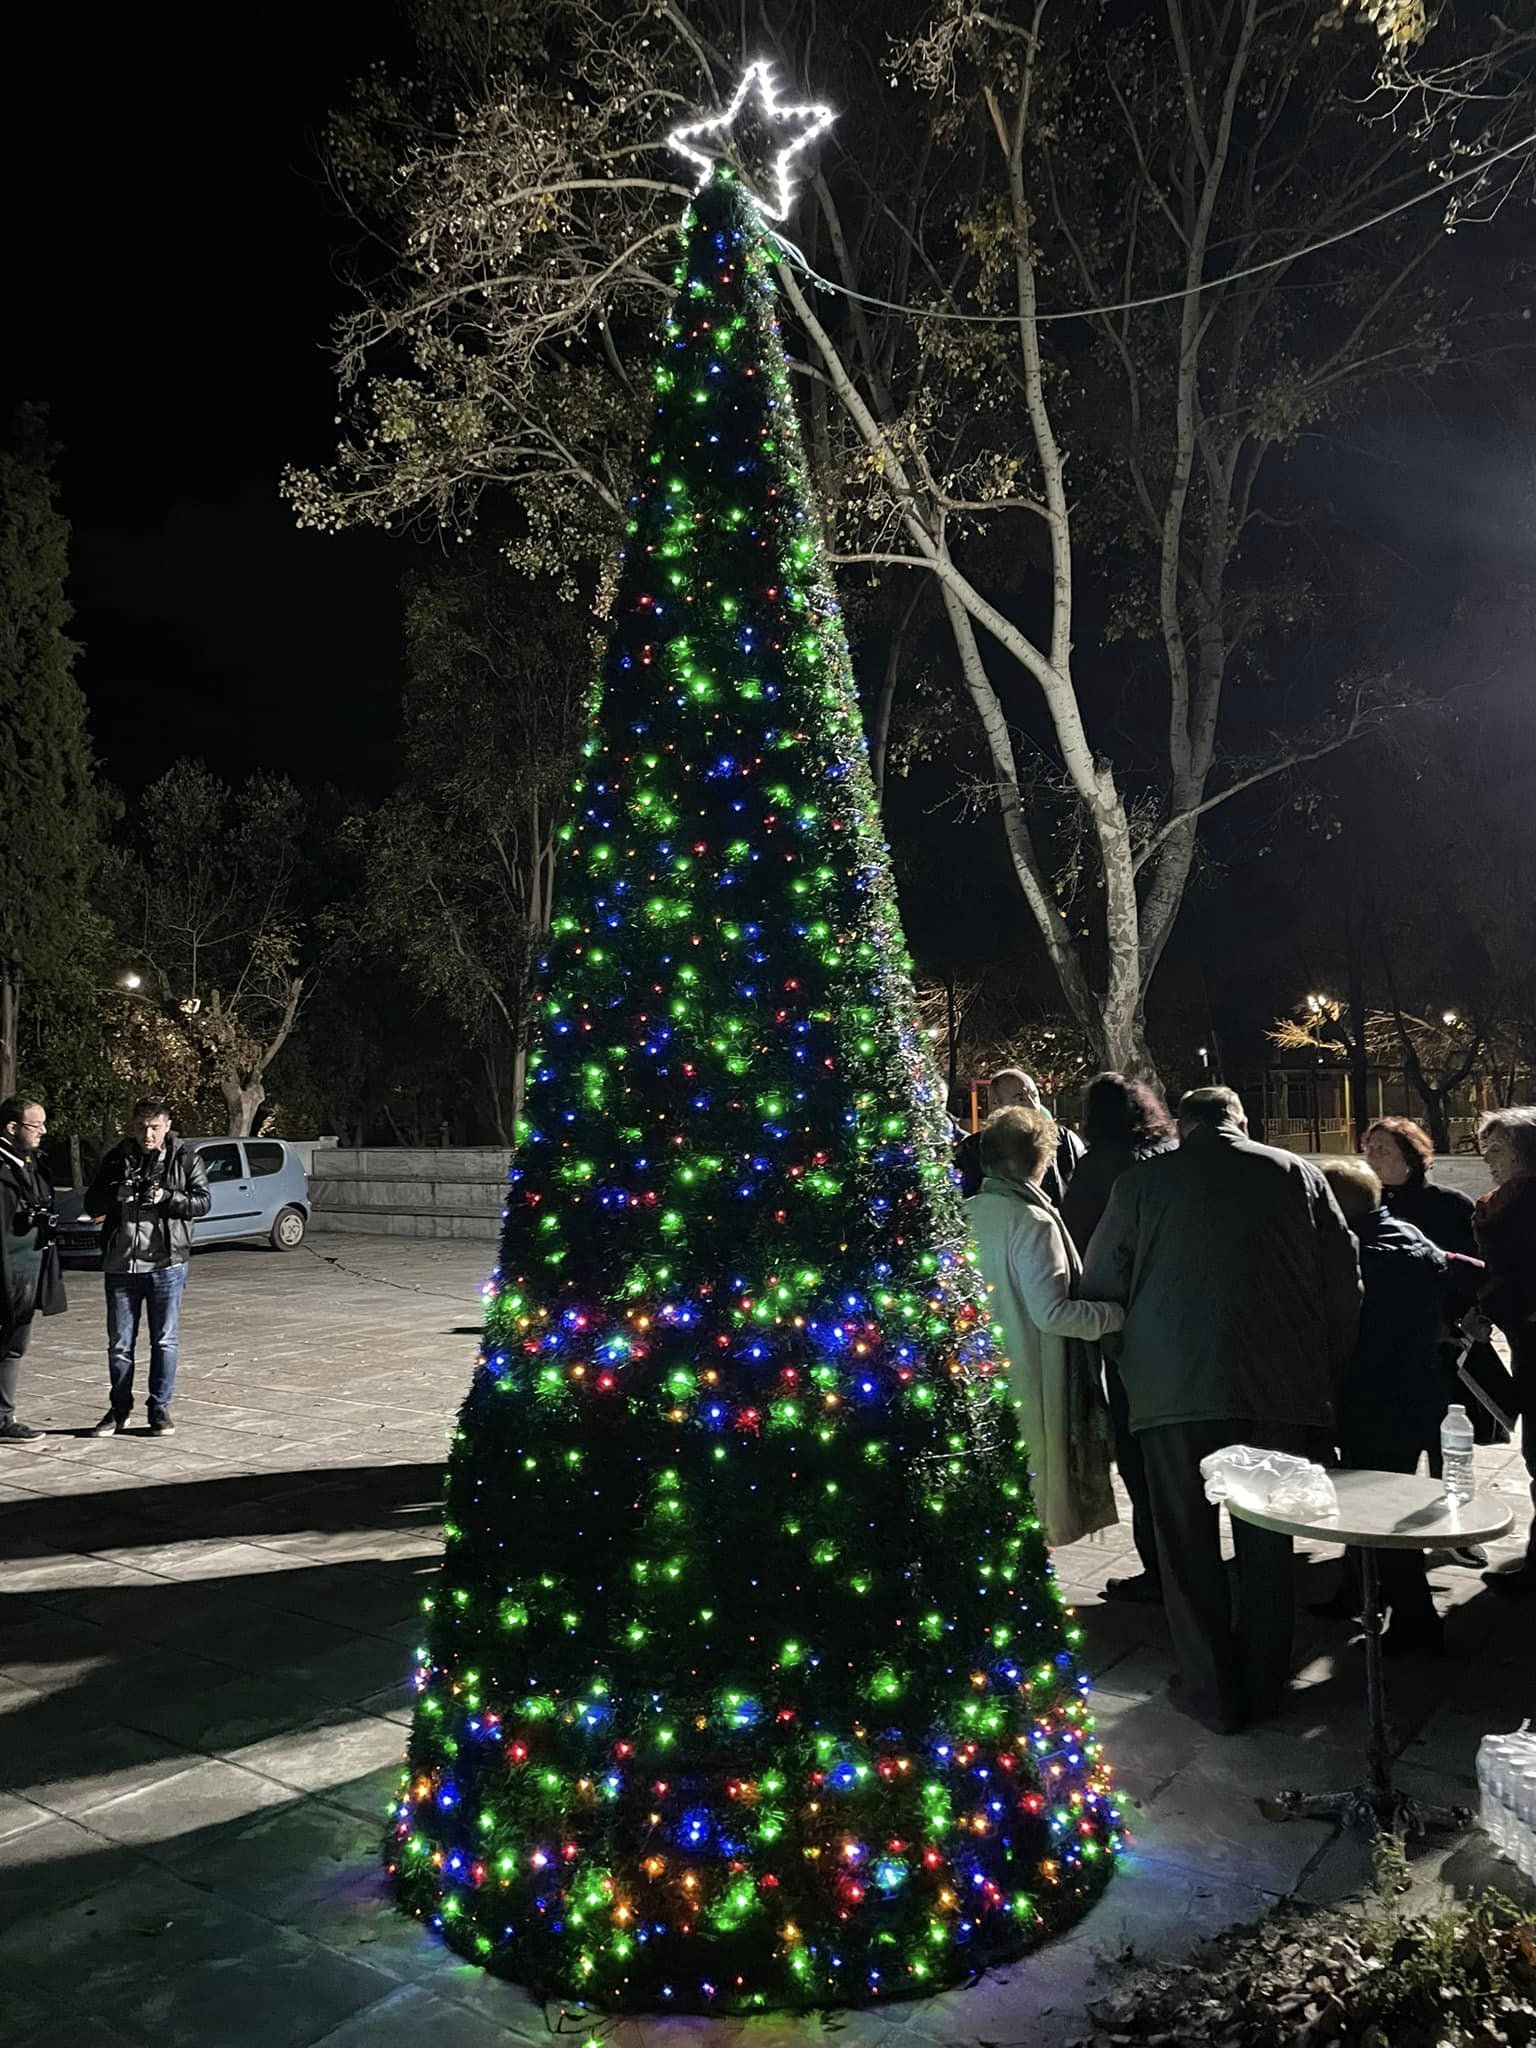 Δήμαρχος Κομοτηνής: Άναψε και το χριστουγεννιάτικο δένδρο του Νέου Σιδηροχωρίου